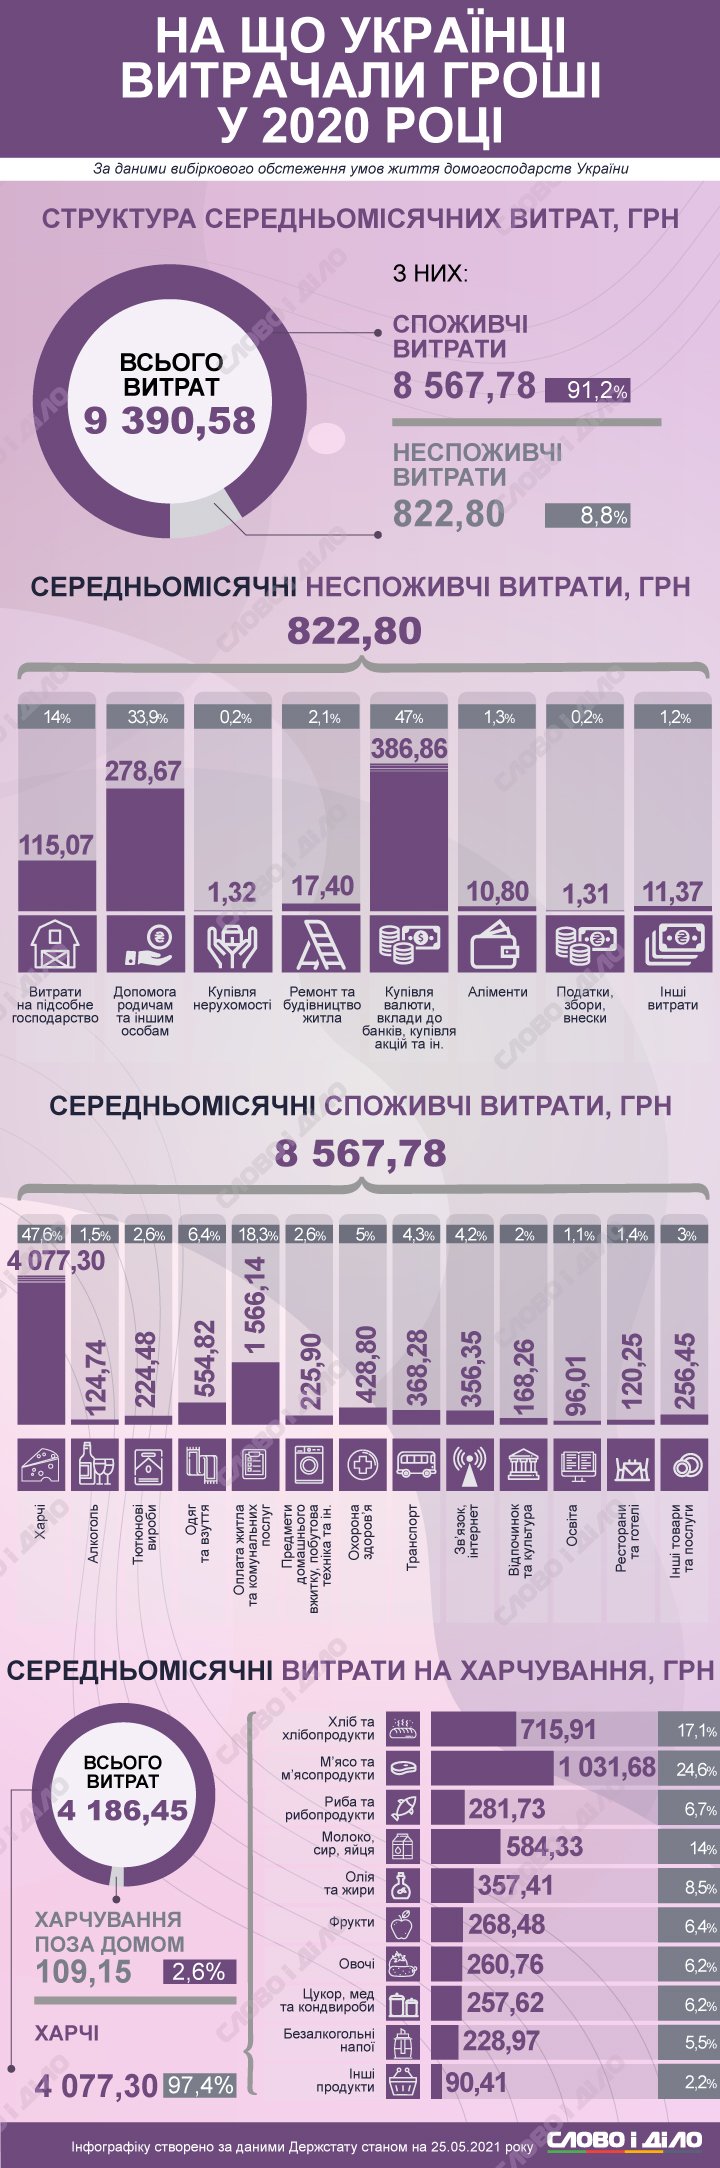 Украинцы в среднем за месяц тратили 9,4 тысячи гривен в 2020 году. Больше 4 тысяч уходило на продукты.